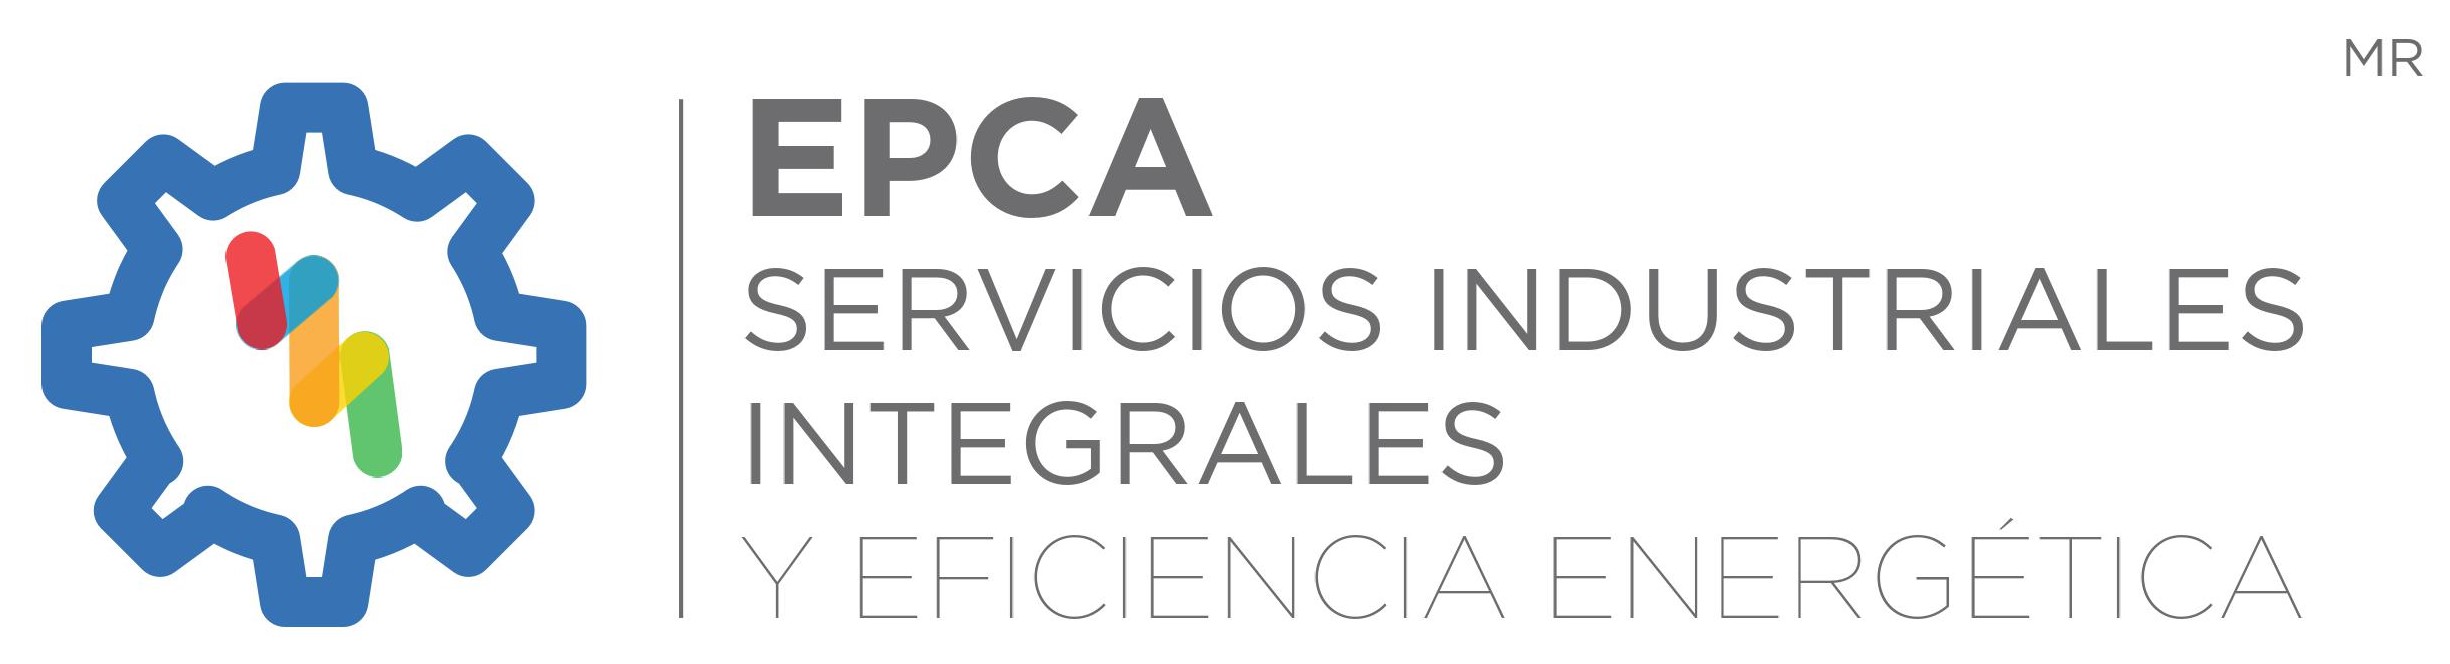 EPCA SERVICIOS INDUSTRIALES INTEGRALESY EFICIENCIA ENERGETICA